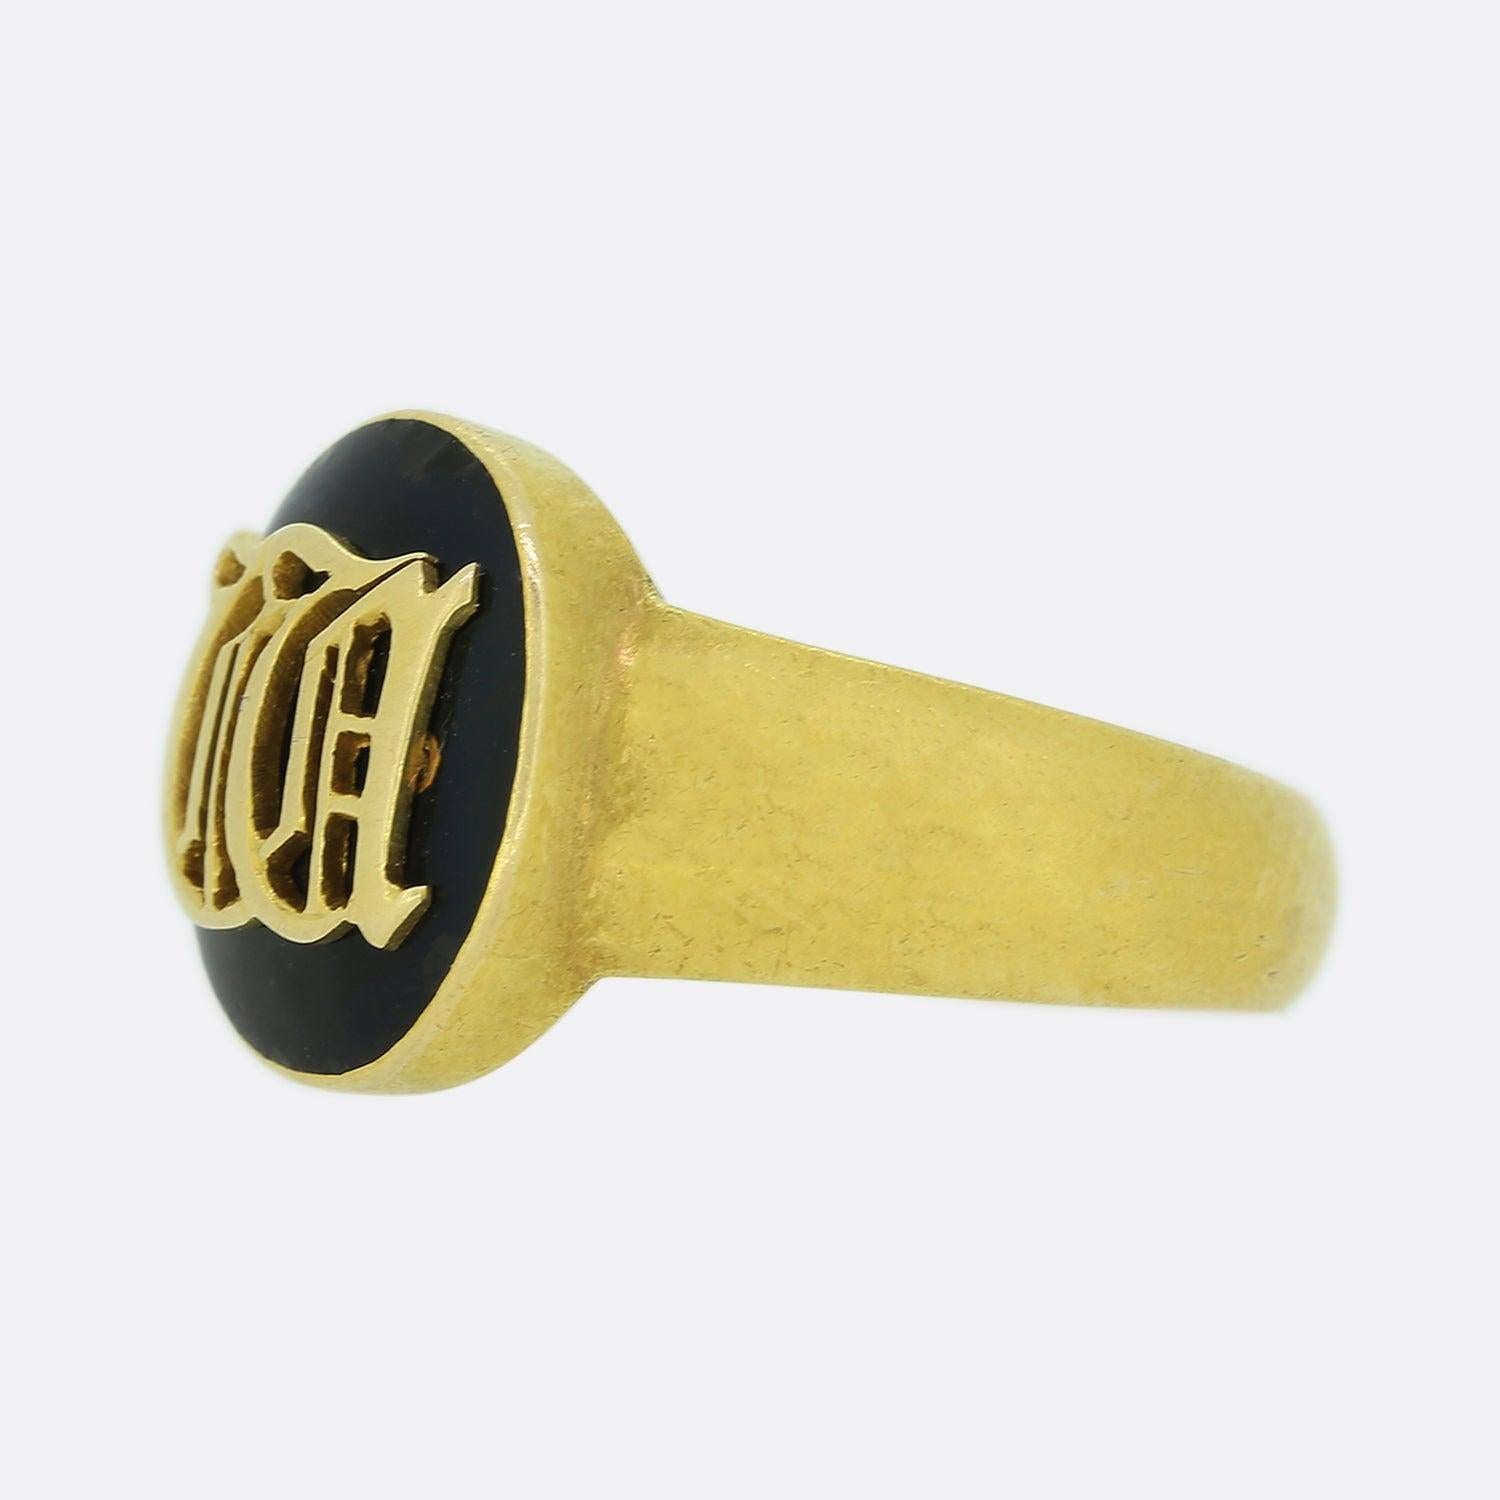 Dies ist ein wunderschöner Trauerring aus 18 Karat Gelbgold aus der viktorianischen Ära. Der Ring ist mit Initialen auf der Vorderseite und einem Medaillonfach auf der Rückseite des Rings versehen und wurde aus 18 Karat Gelbgold gefertigt.